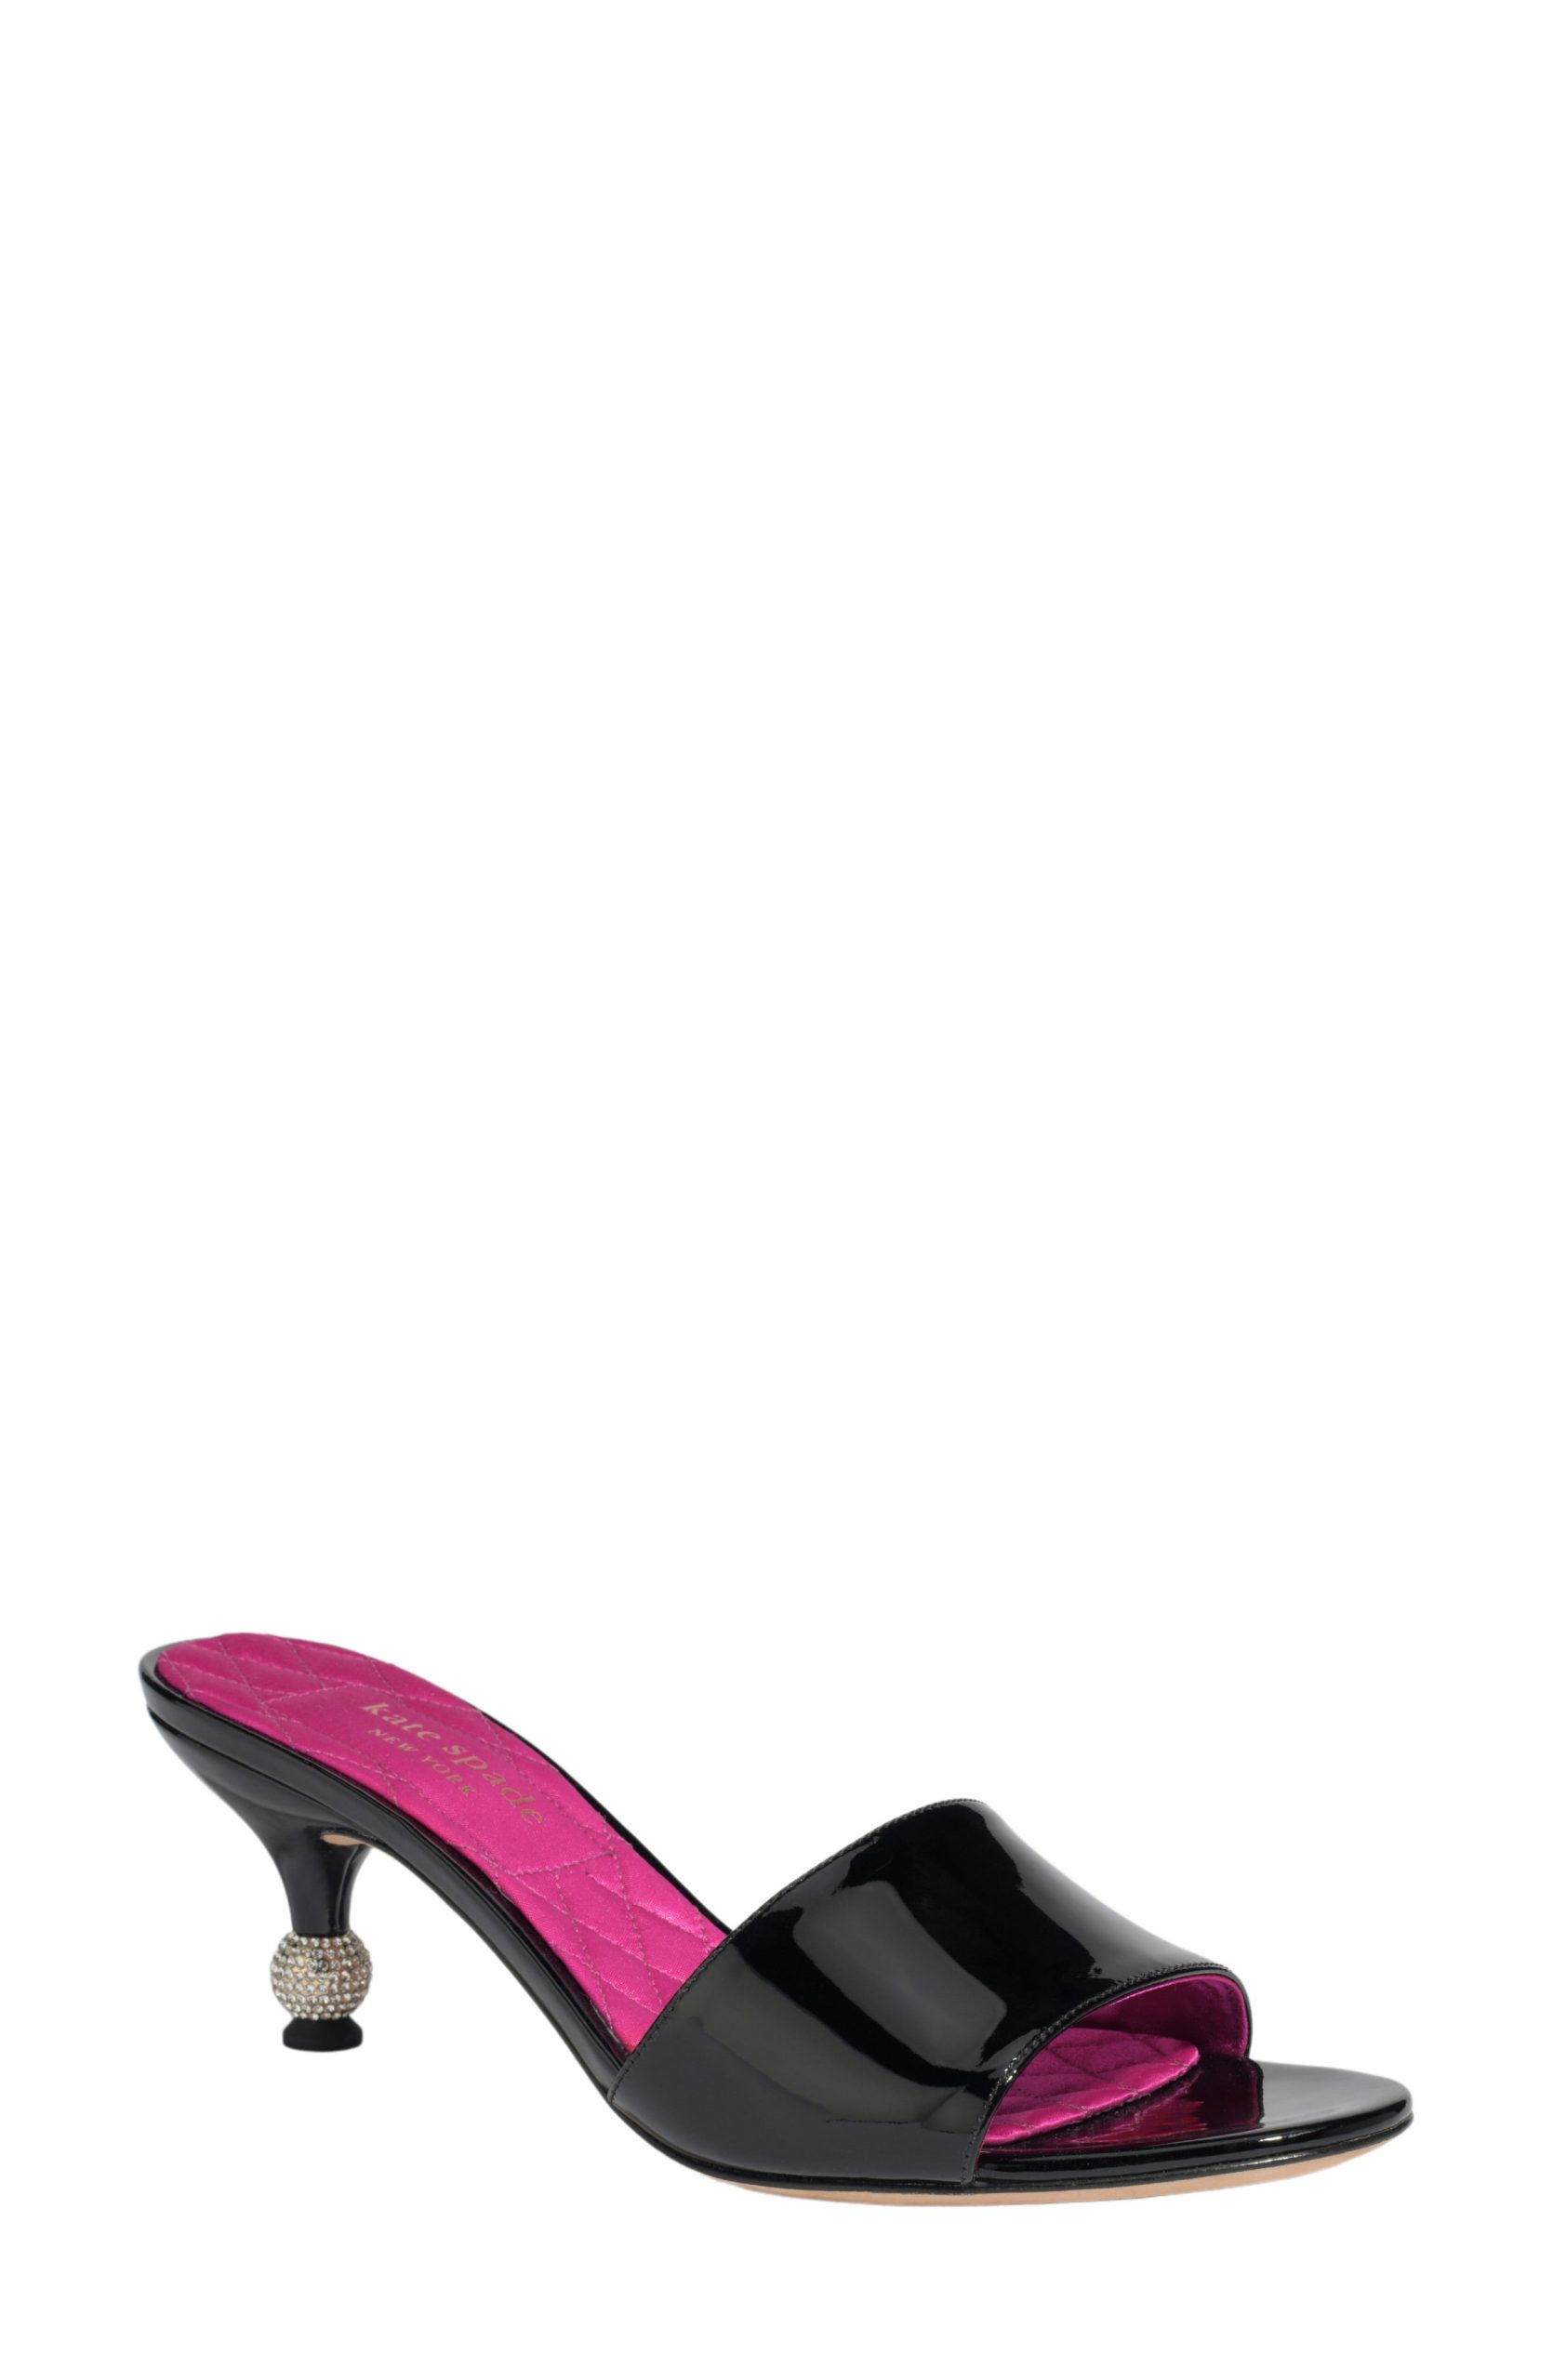 Women’s Kate Spade New York Dorset Slide Sandal, Size 5 M - Black ...